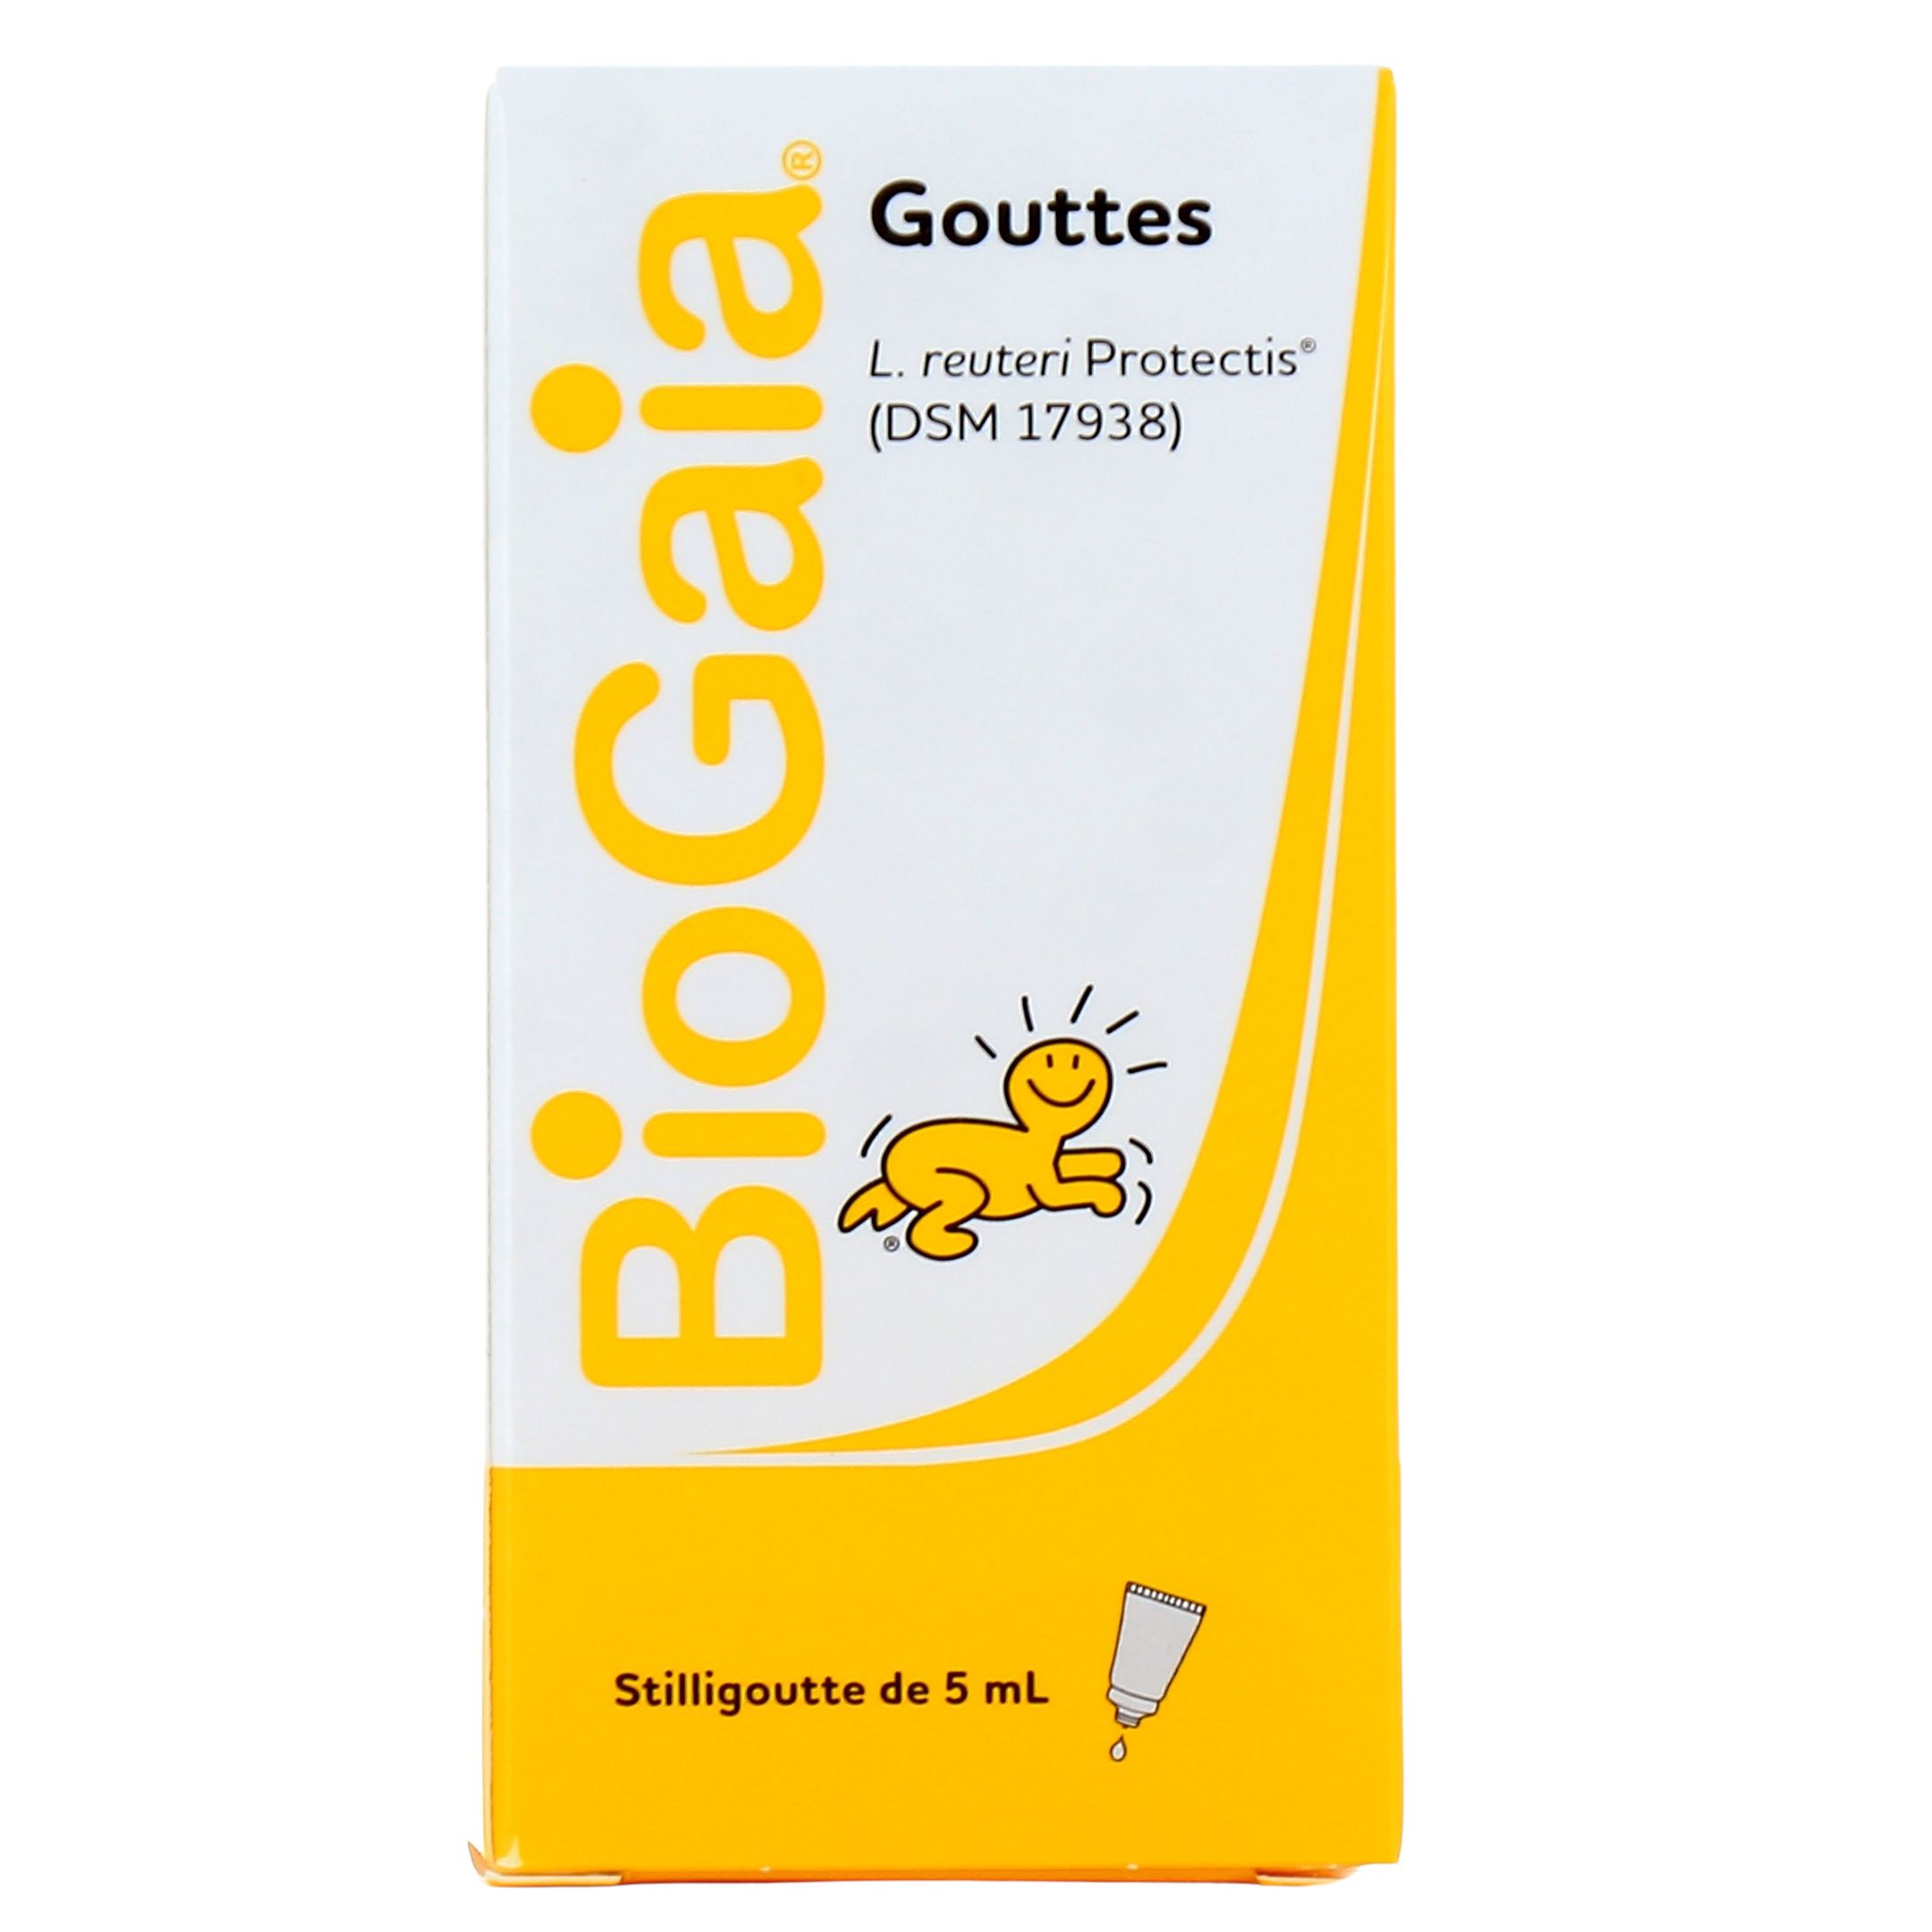 Biogaia gouttes 5ml